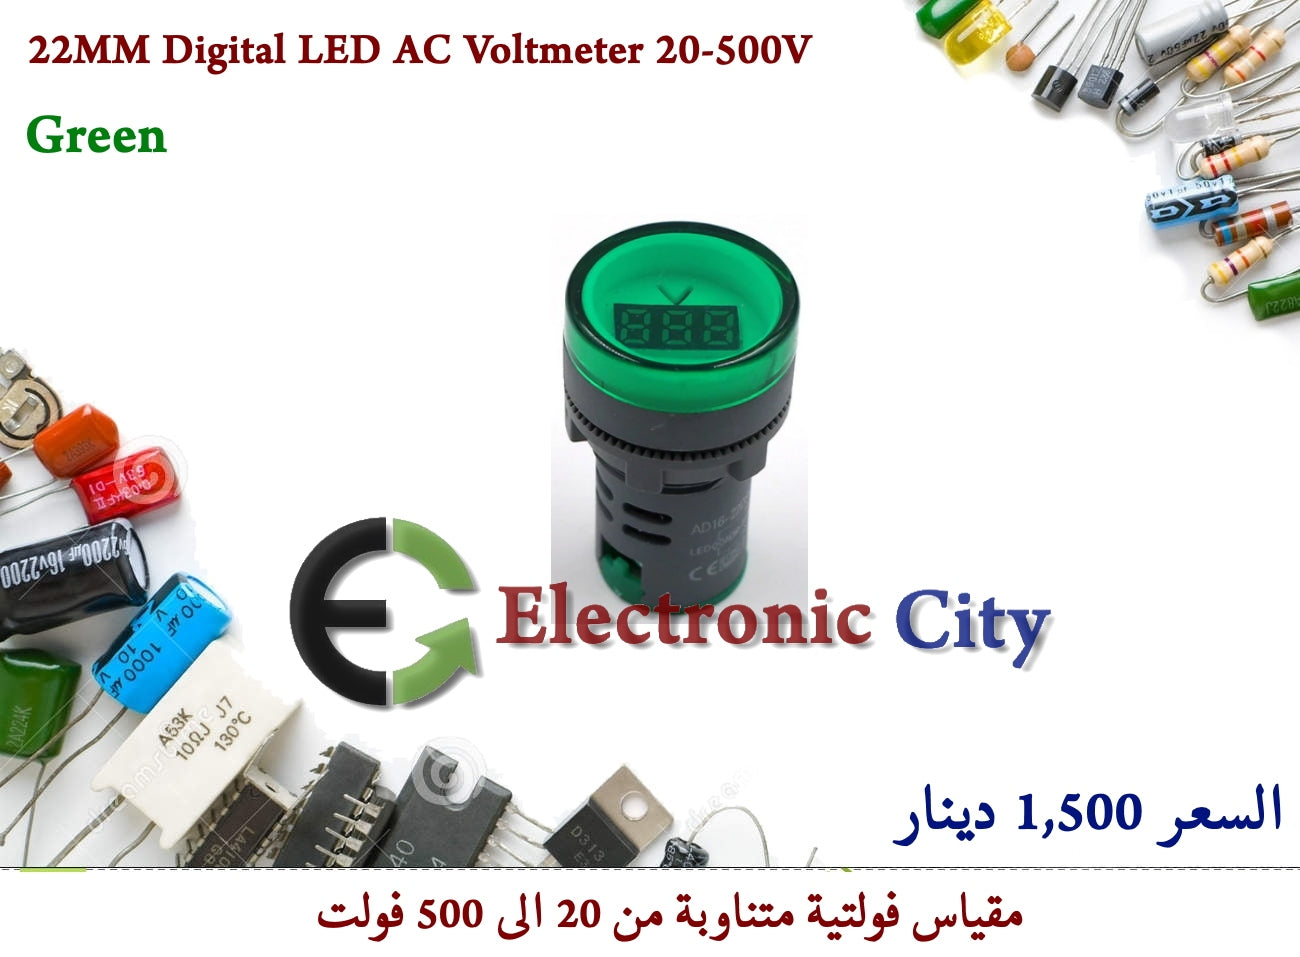 22MM Digital LED AC Voltmeter 20-500V Green